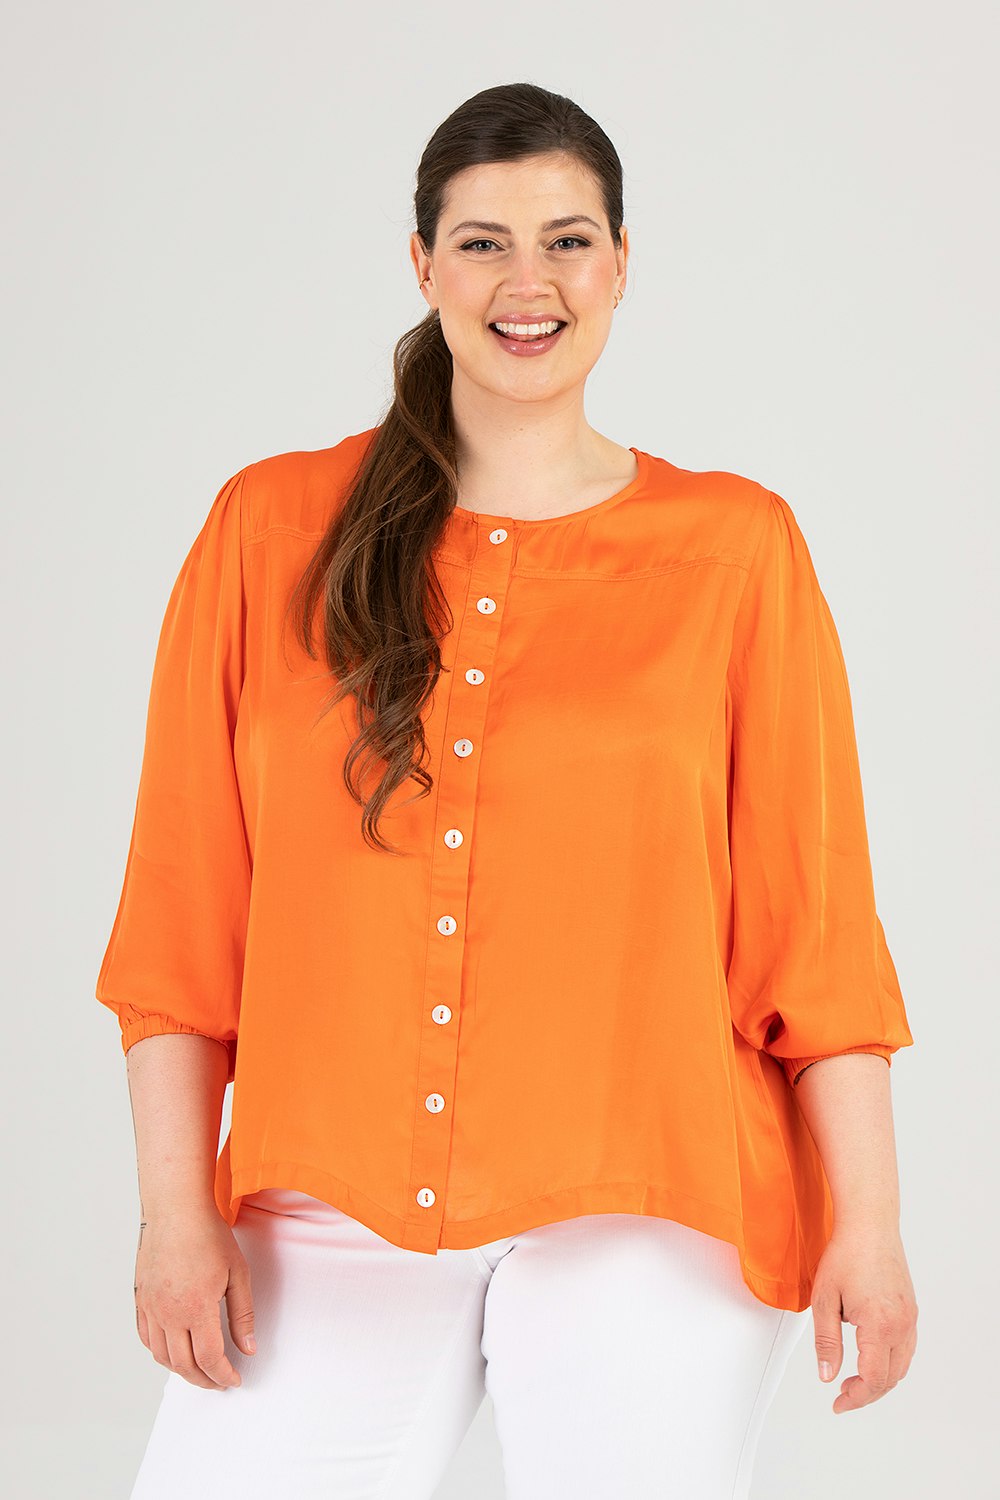 Hedvig blouse orange